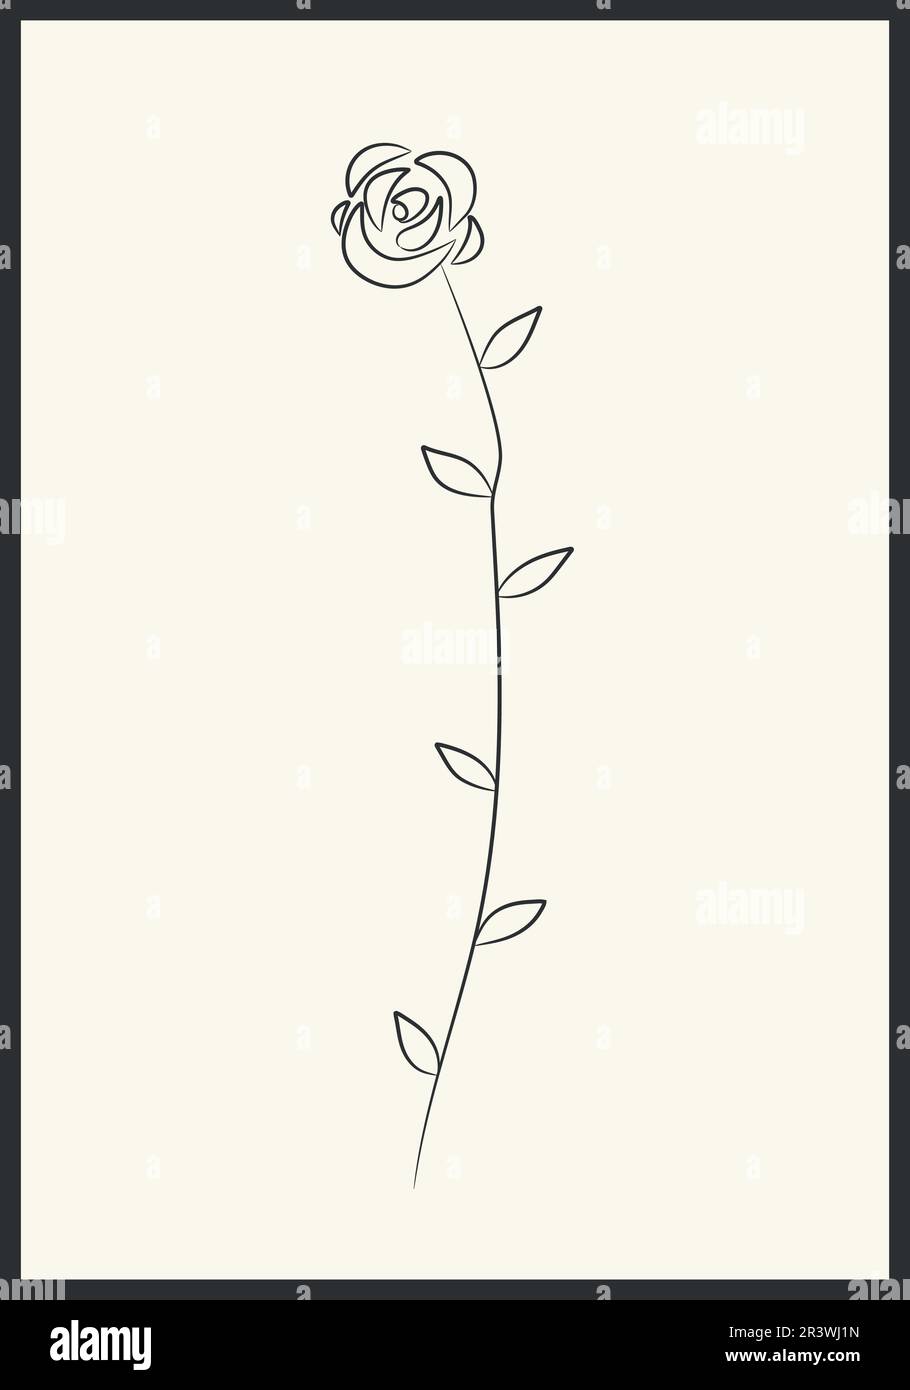 Fleur rose dessinée à la main. Élément floral dessiné à la main en ligne noire sur fond beige avec cadre. Dessin floral avec contour de ligne. Illustration vectorielle Illustration de Vecteur